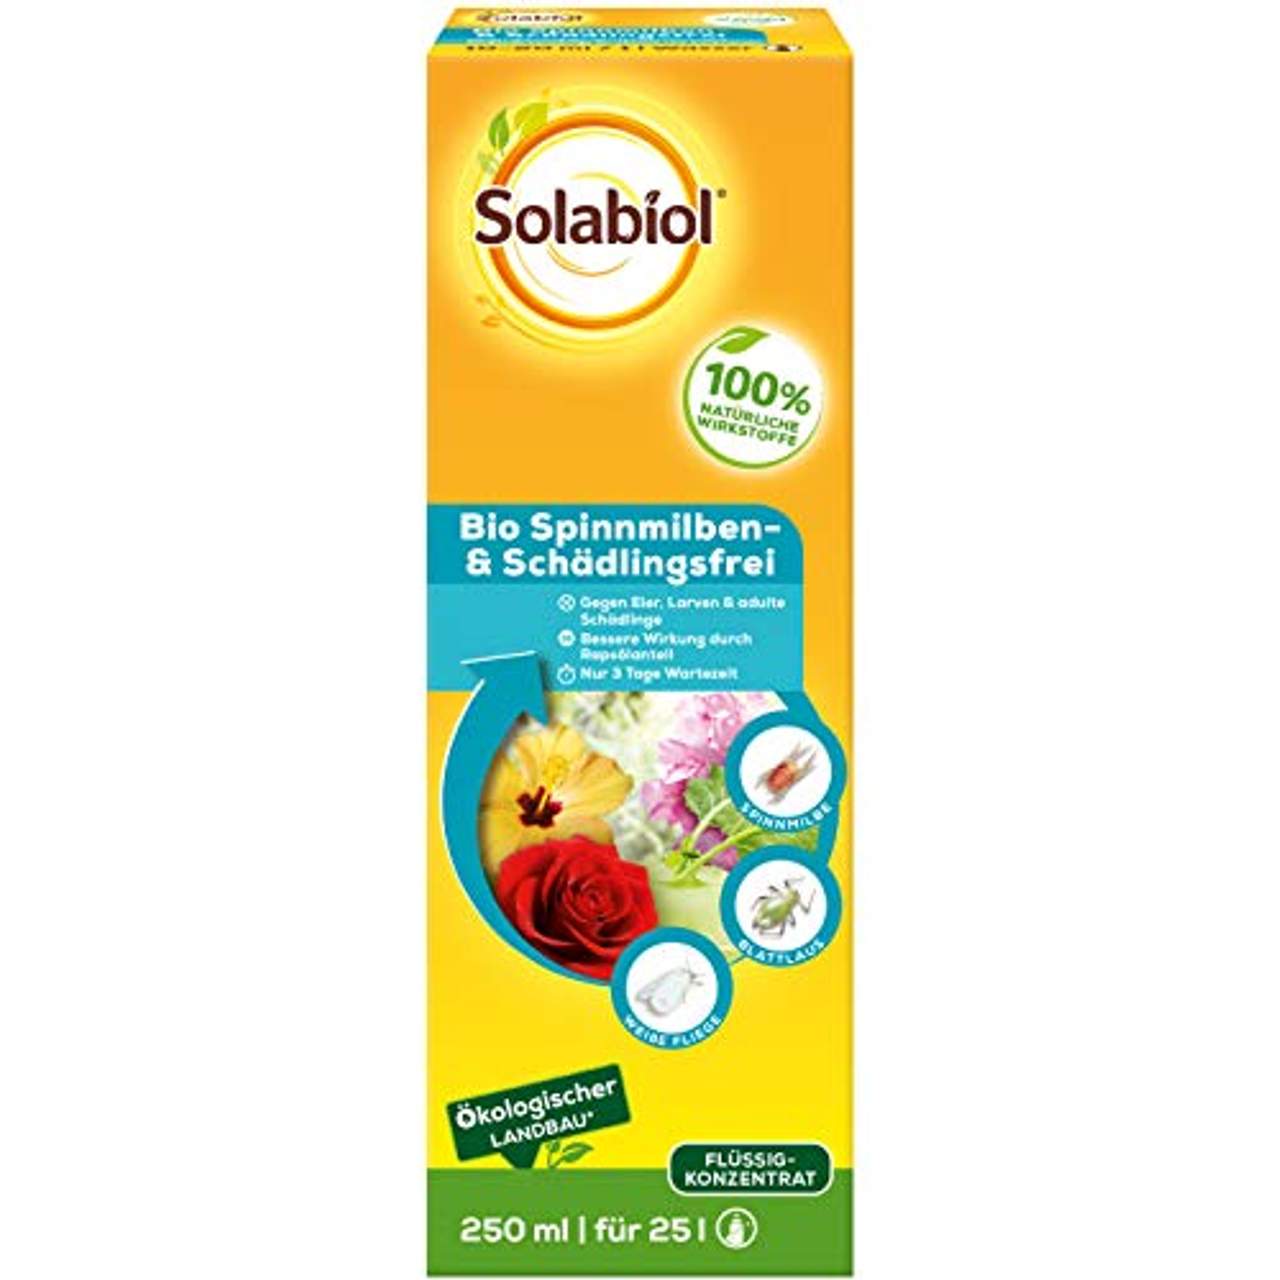 Solabiol Bio Spinnmilben & Schädlingsfrei